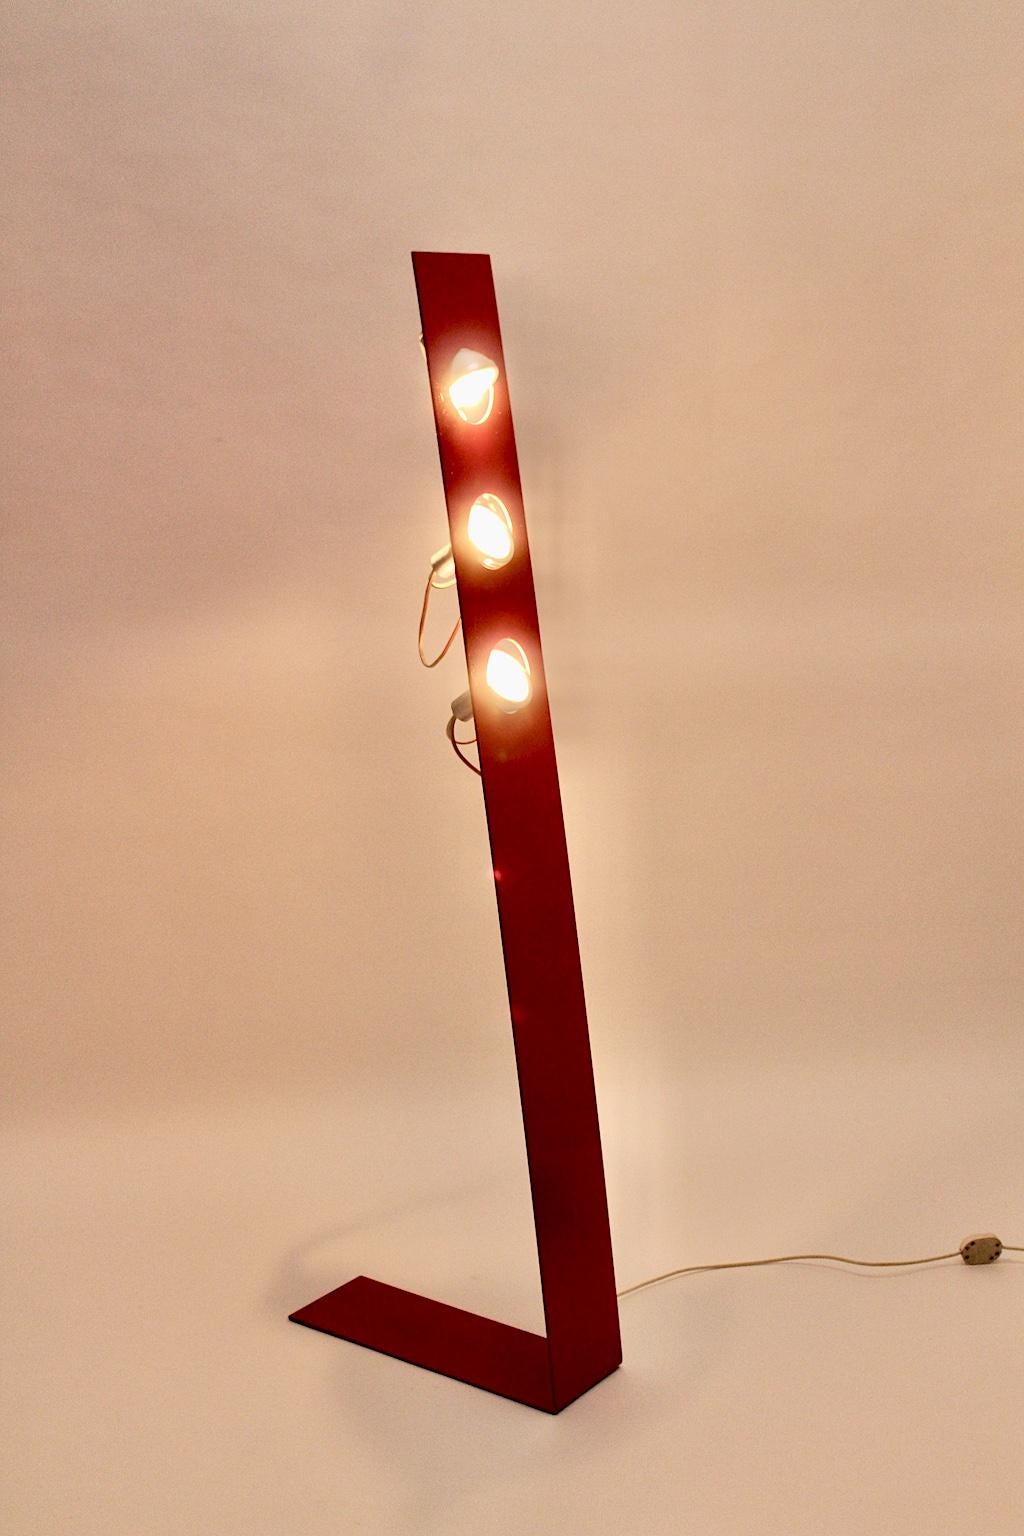 Lampadaire en métal rouge de l'ère spatiale, conçu et fabriqué dans les années 1960, en Italie.
Cet étonnant lampadaire est doté d'une base en métal plié rouge et de trois douilles E 14.
Les lumières sont réglables.
Le lampadaire est également doté